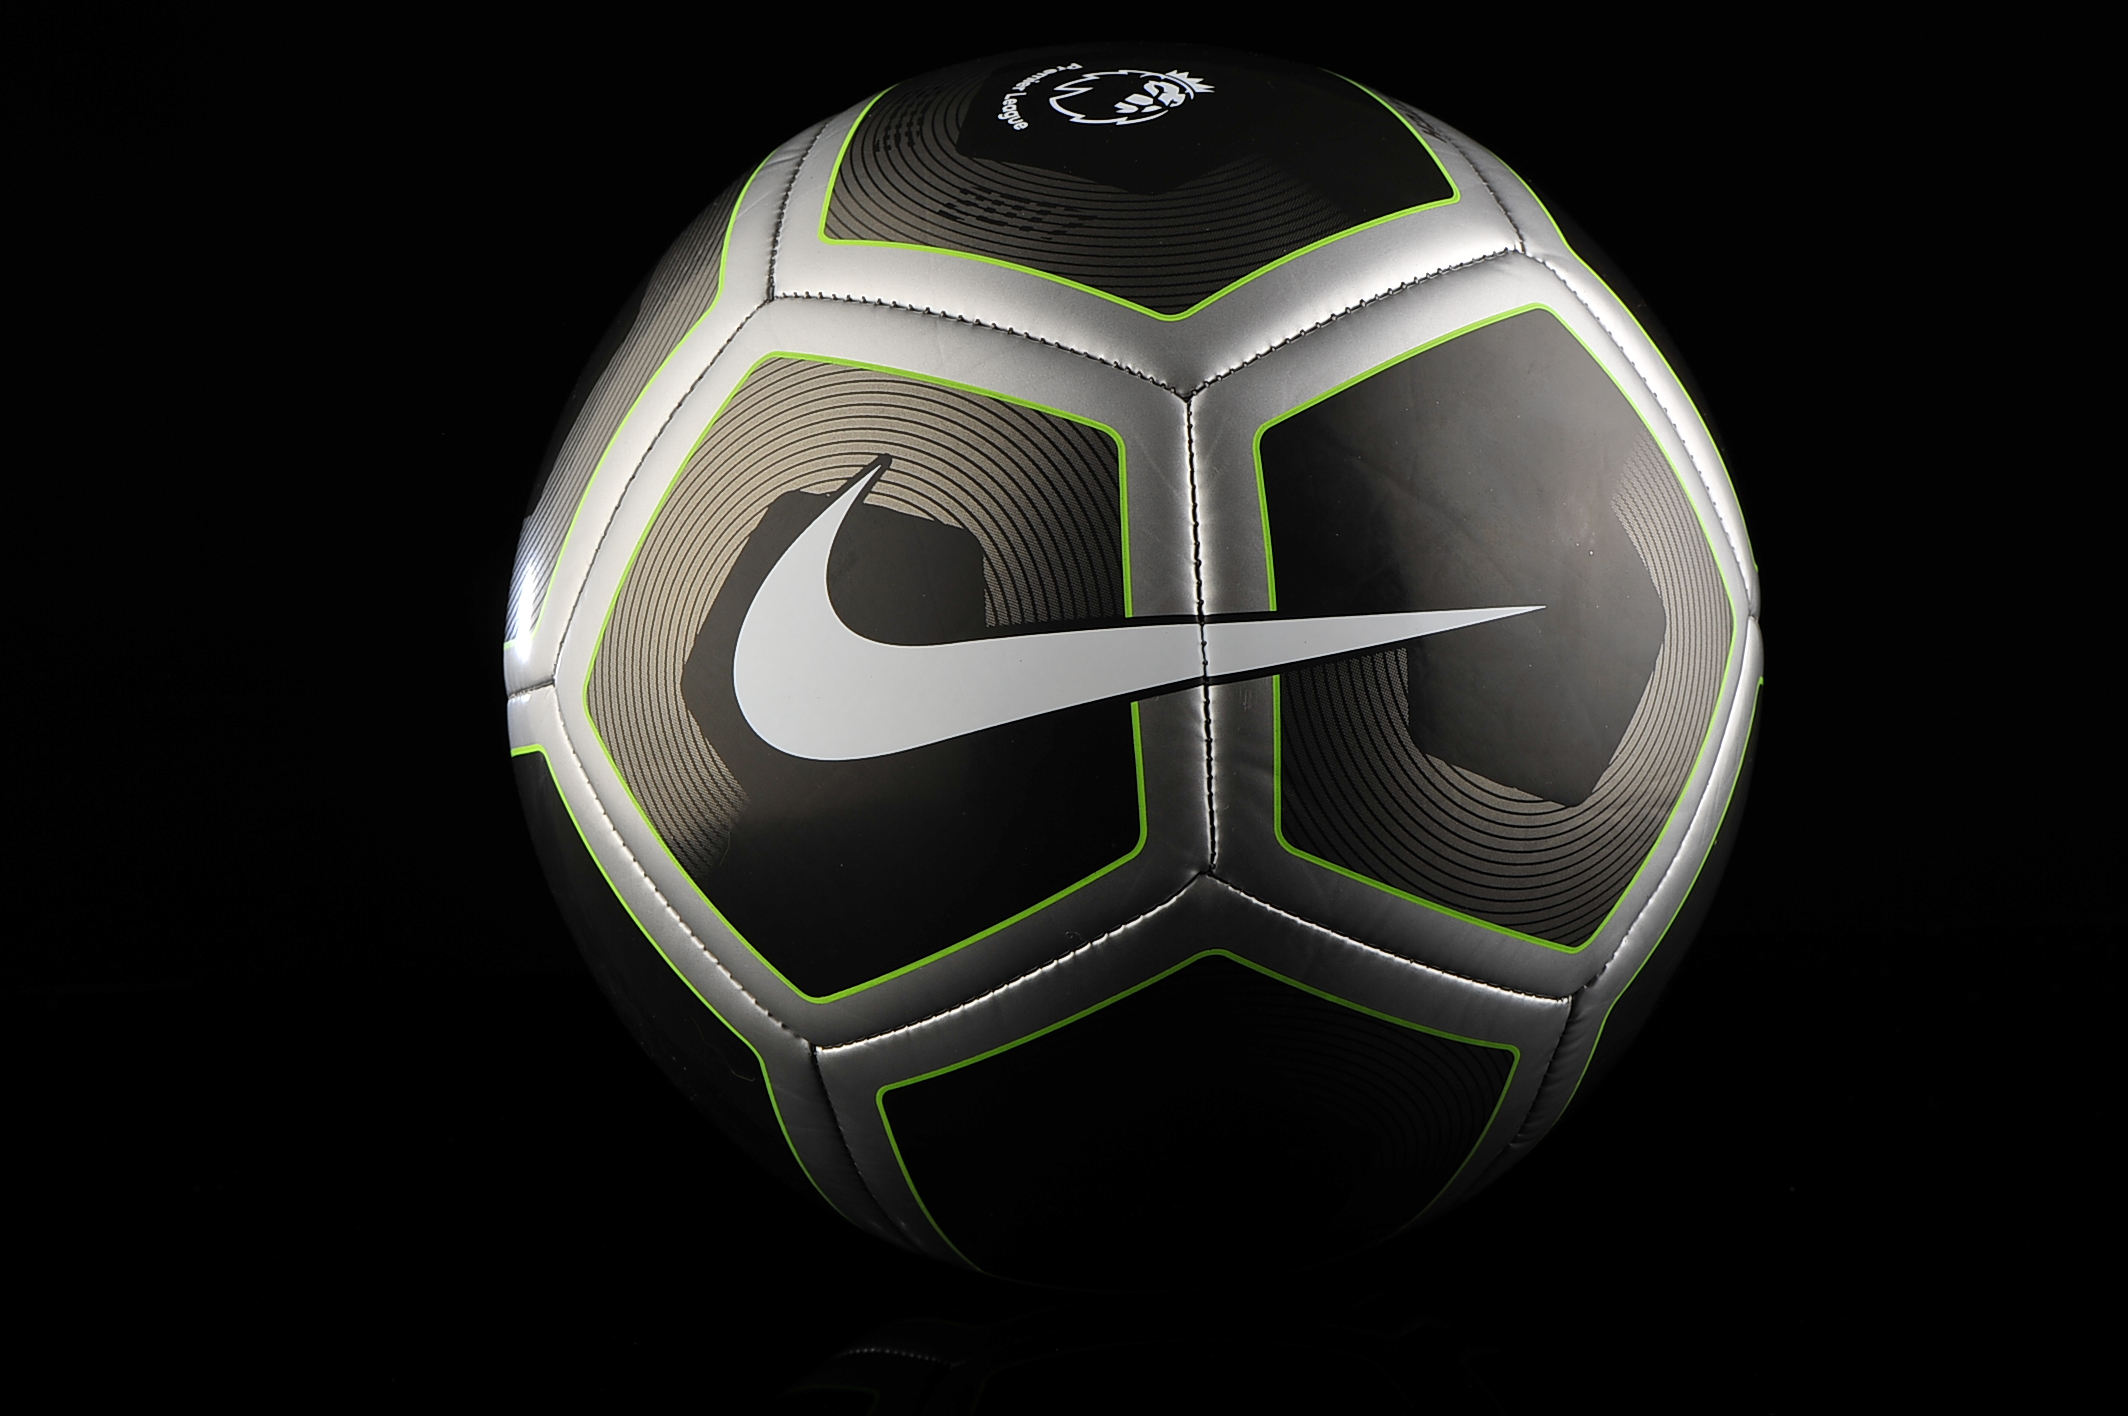 2994 998. Nike sc2994. Футбольный мяч Nike премьер лига 2013 2014.